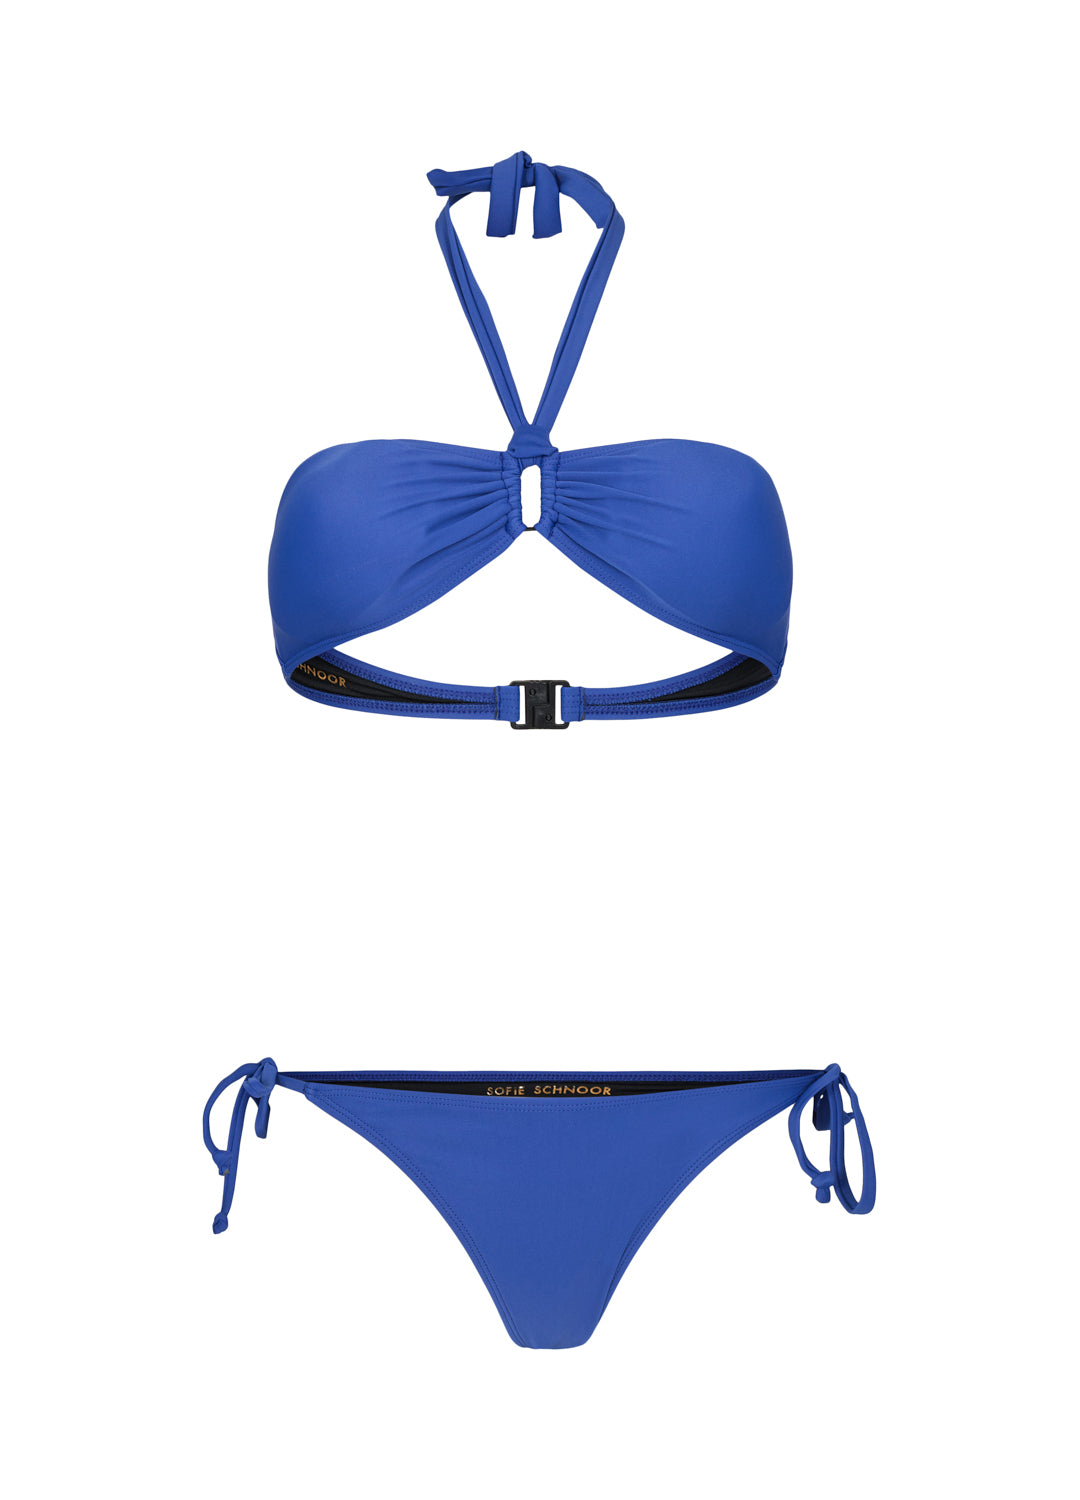 Halter Bikini Swimsuit - Cobalt Blue